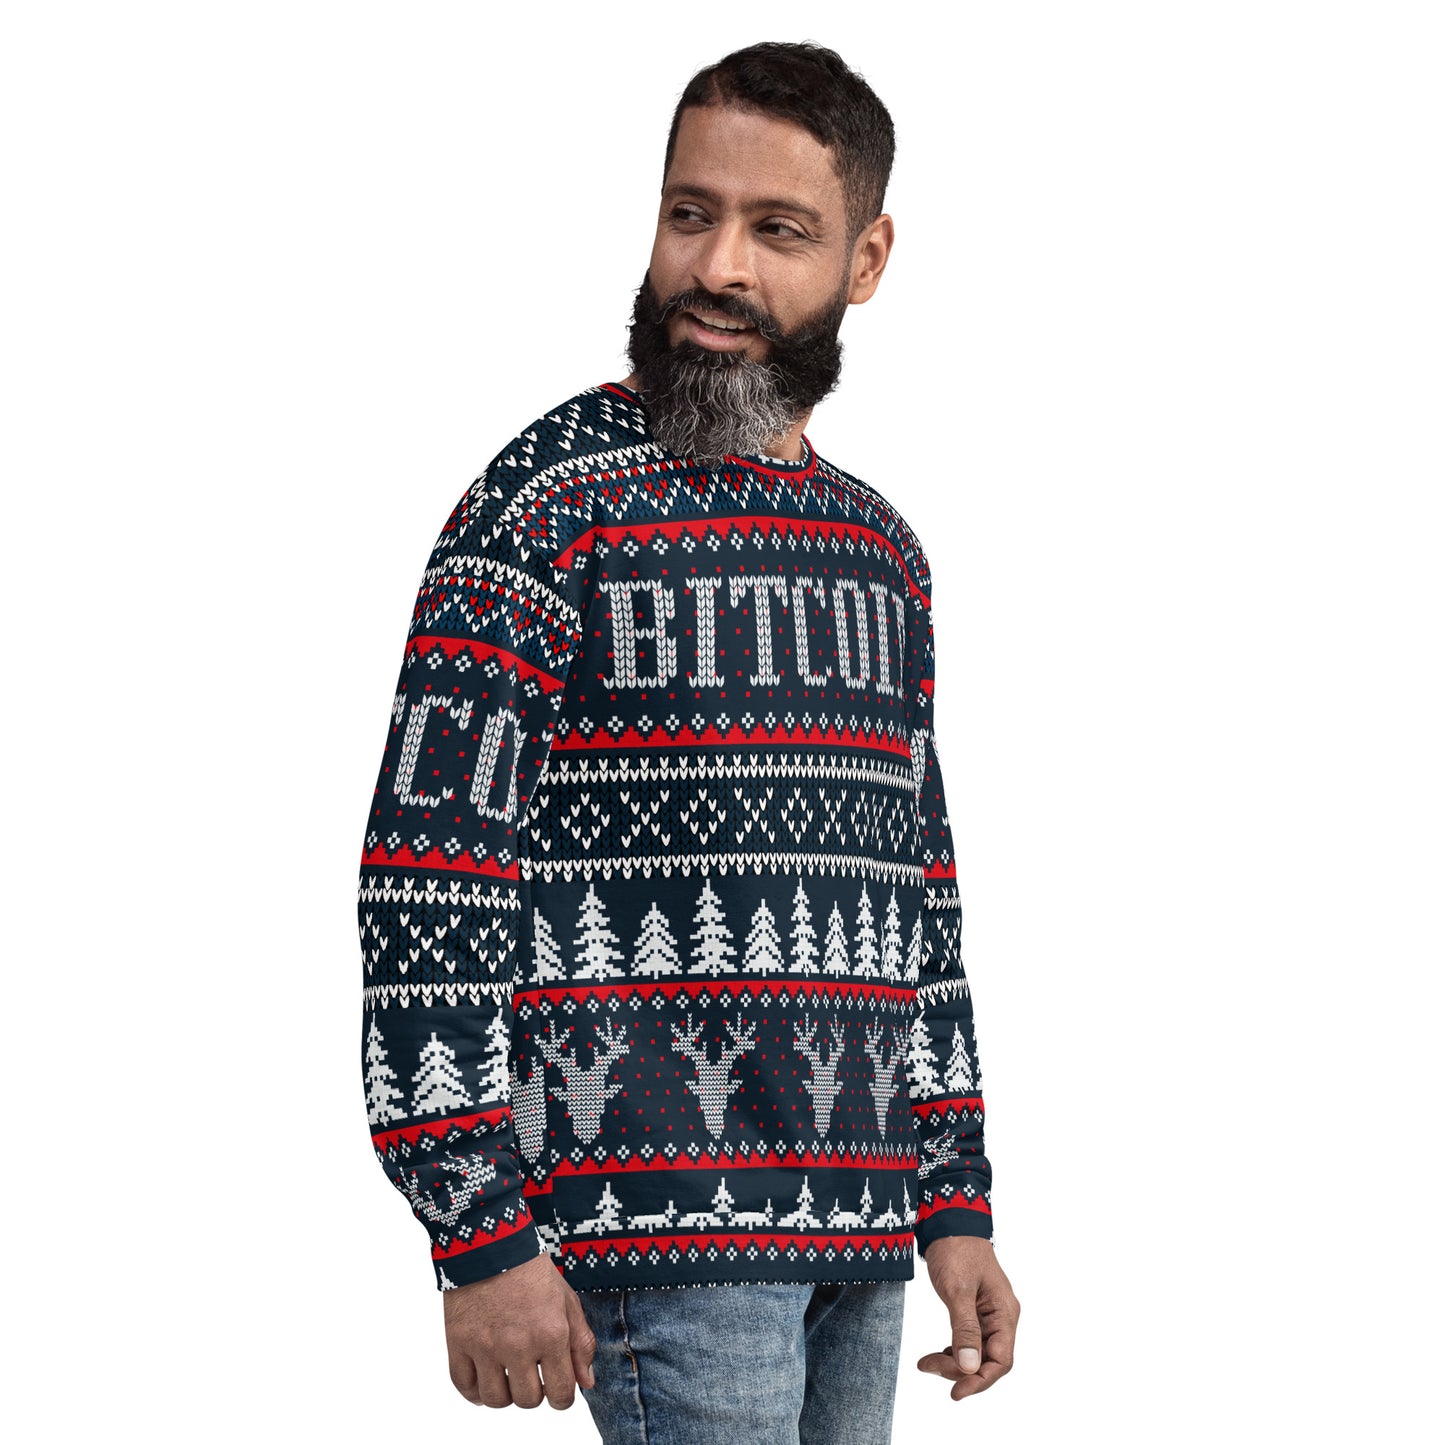 Bitcoin Cheerful Sweatshirt